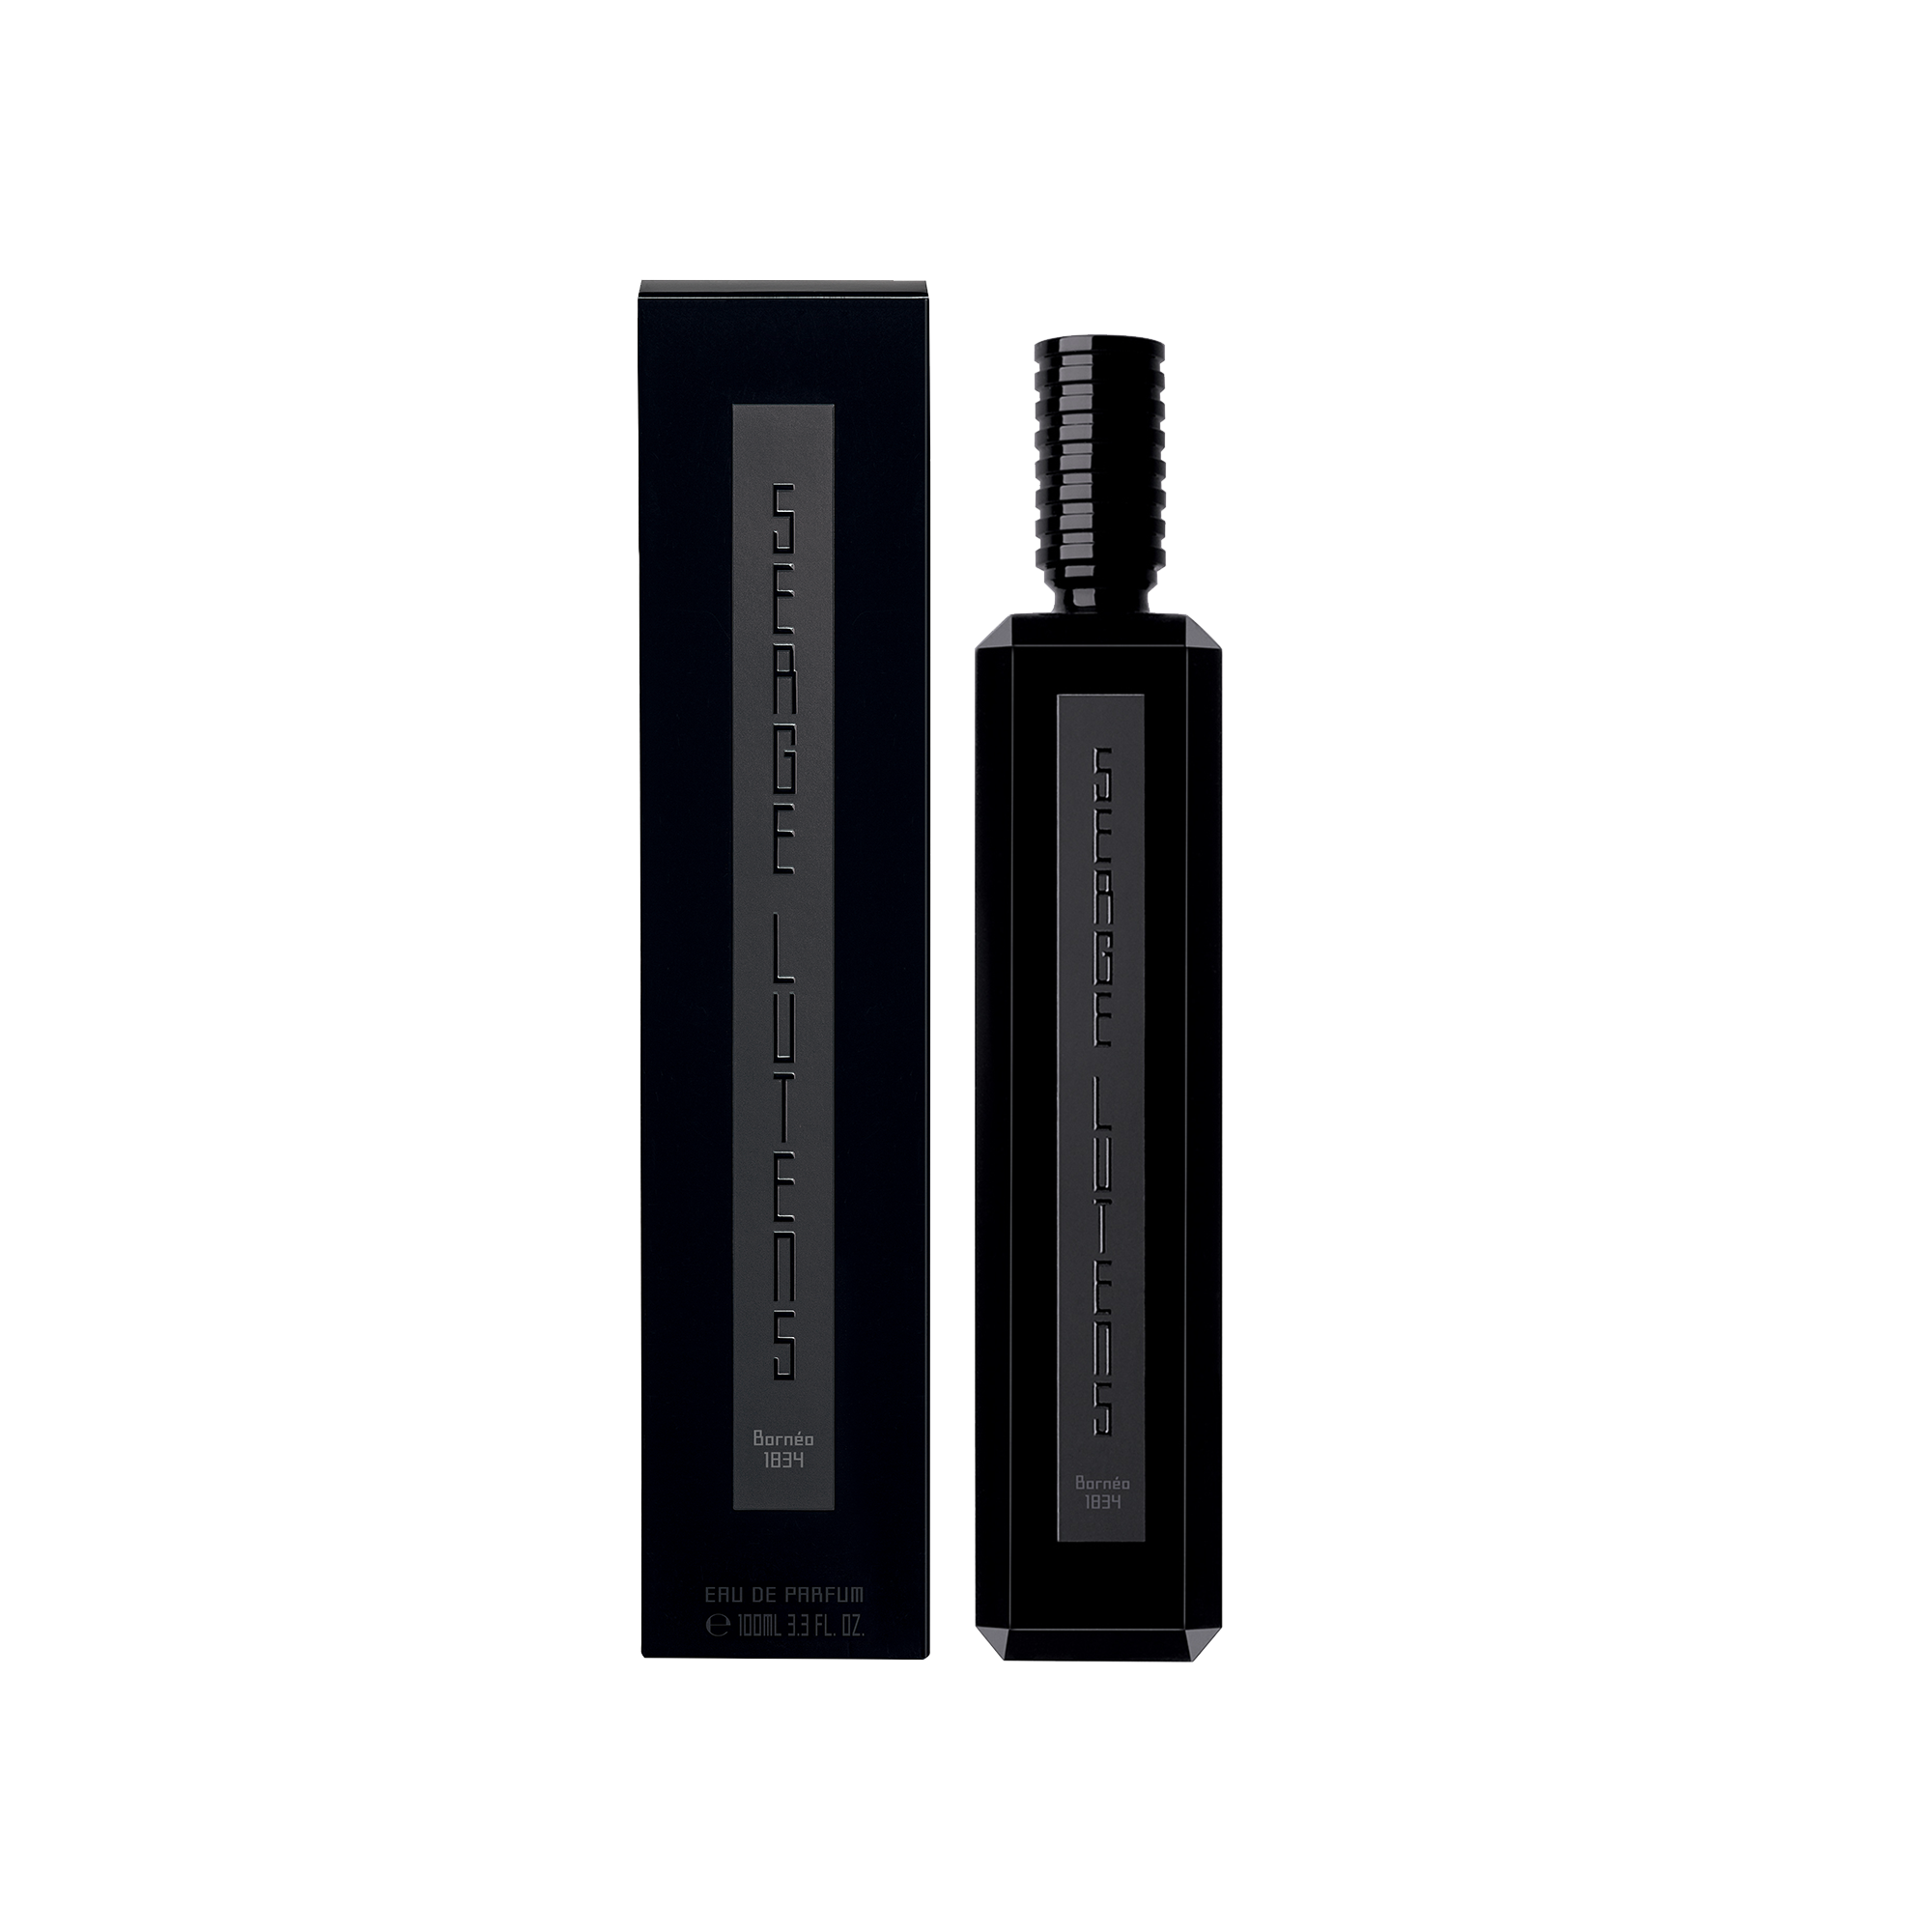 Serge noire - Eau de Parfum 100 ml